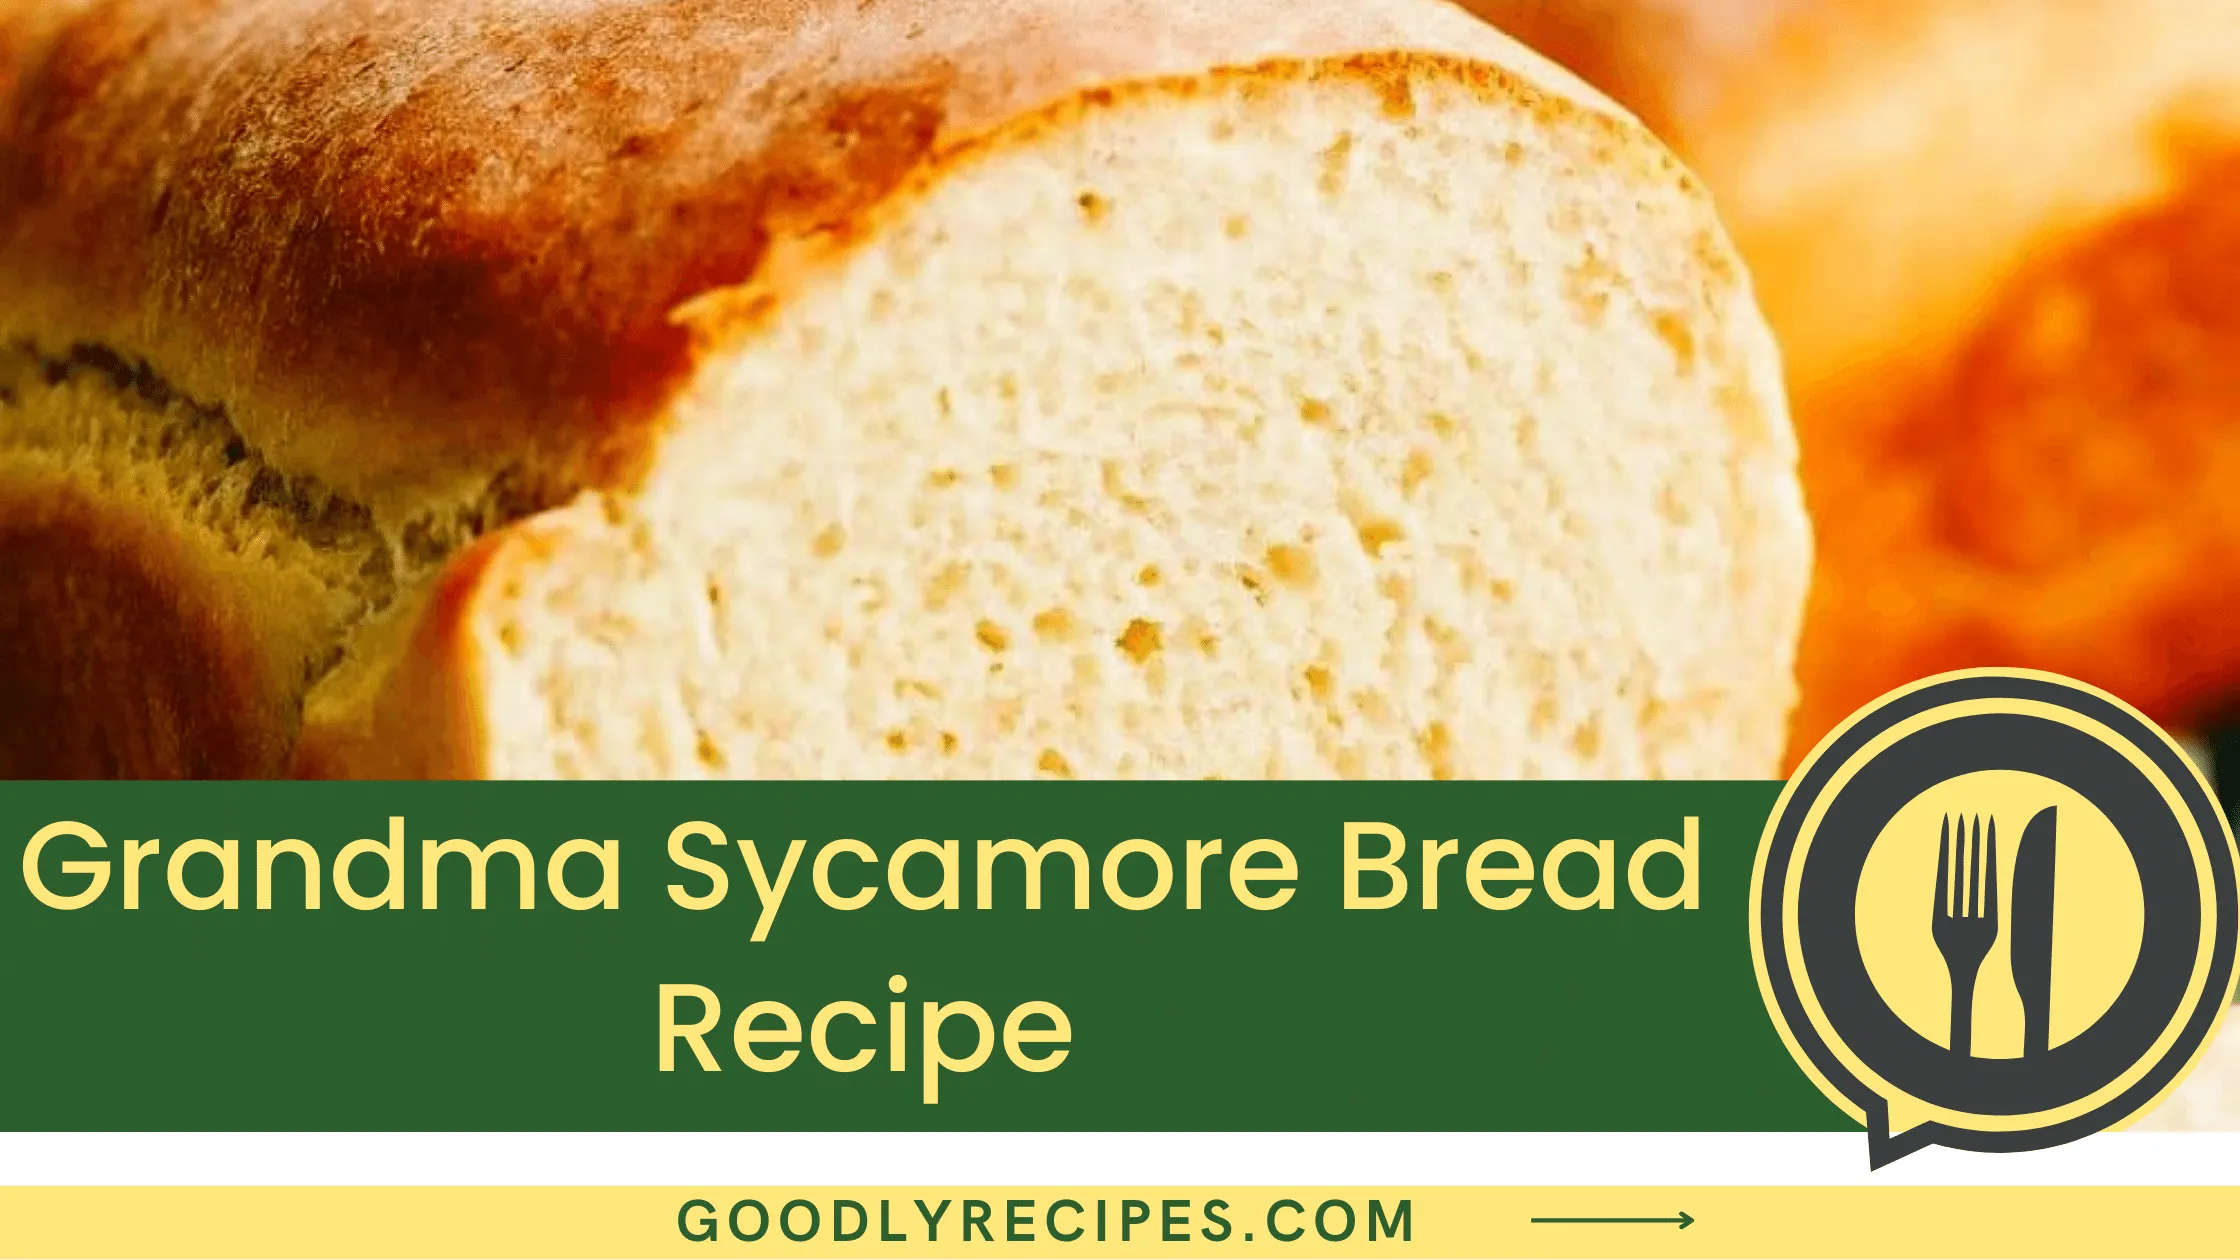 Grandma Sycamore Bread Recipe - For Food Lovers